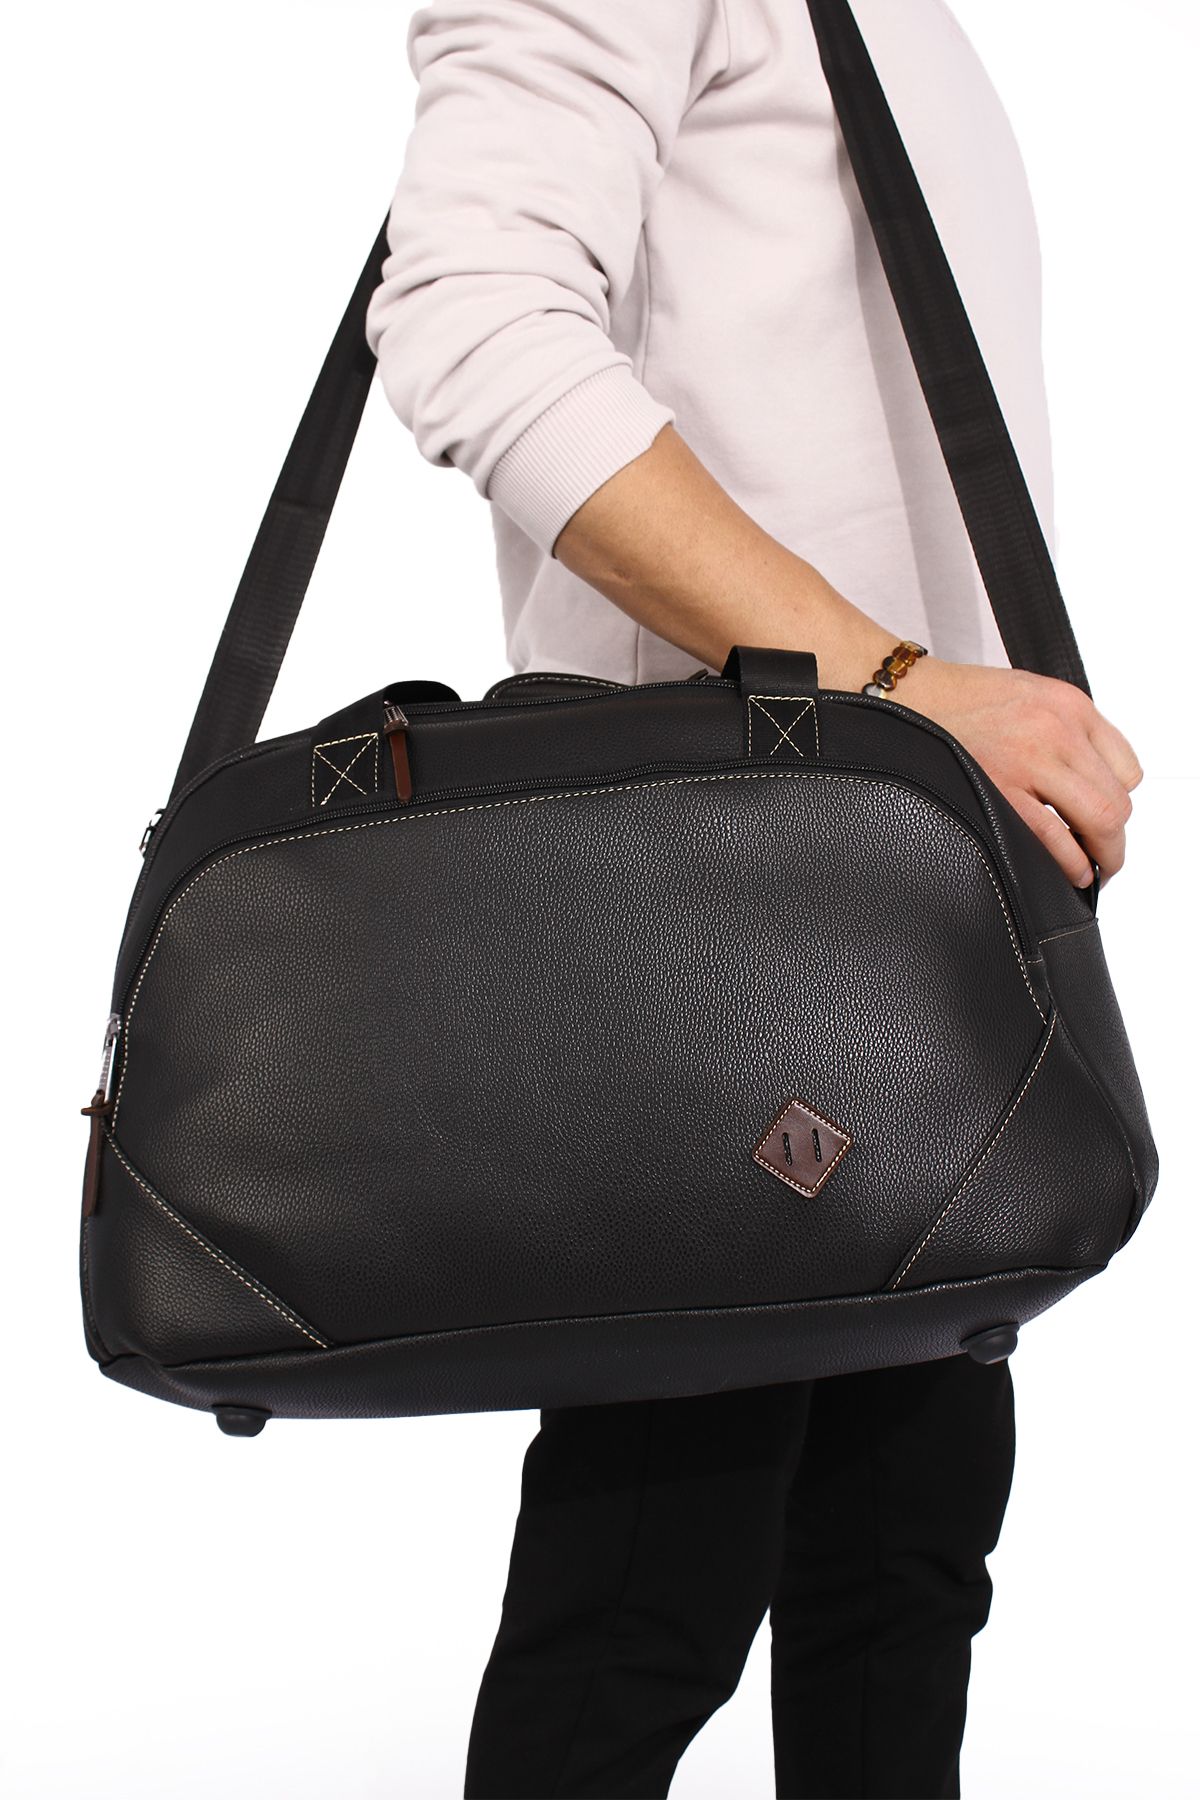 By Hakan Gk59  klasik seyahat valizi spor hastane çantası el ve omuz annebebek çantası kabin boy hostes valiz